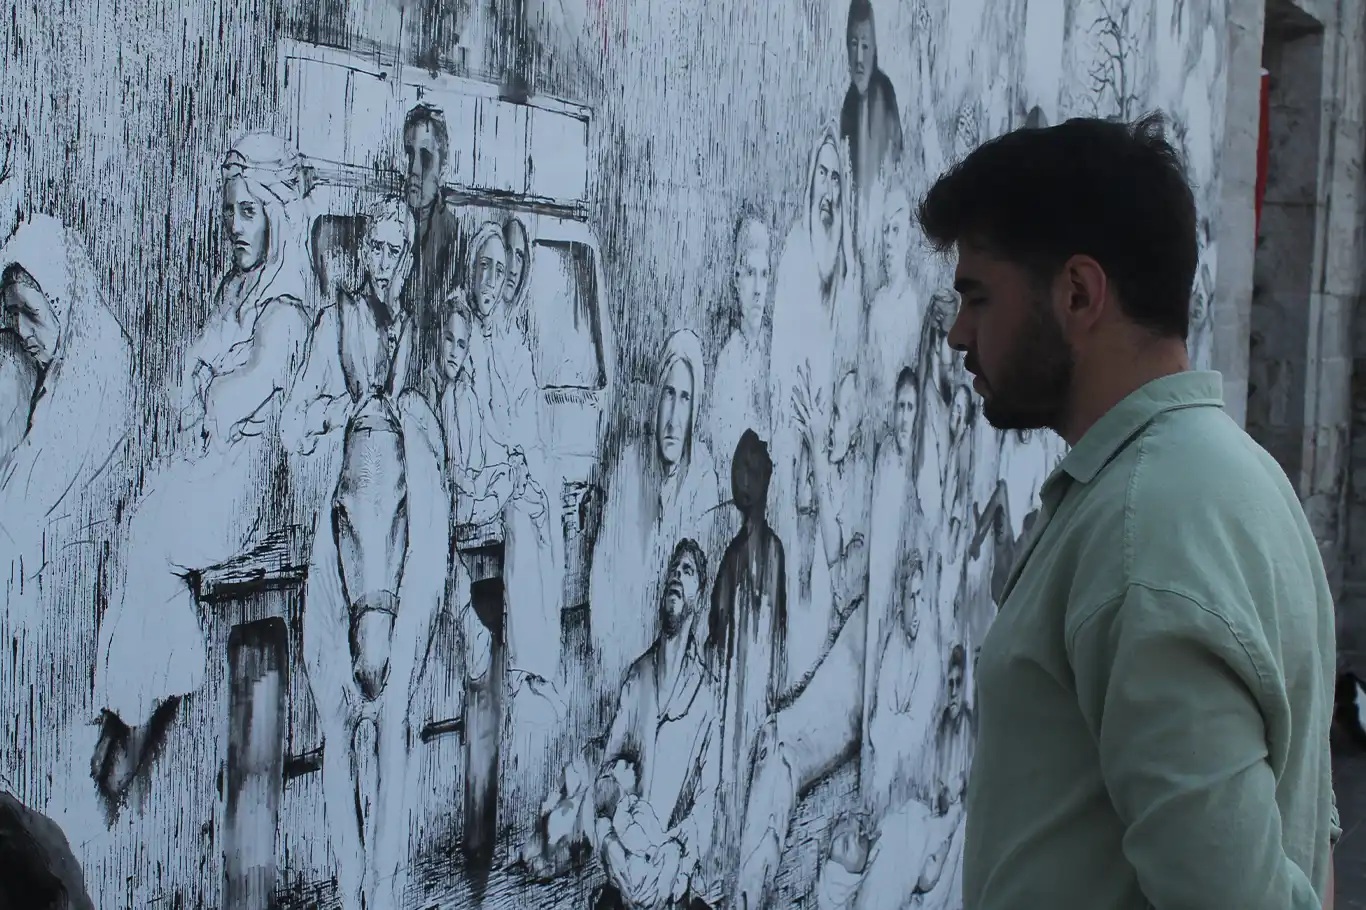 Gazze'de yaşananları dev tuvale çizen genç ressam, soykırıma sessiz kalınmasına dikkat çekti